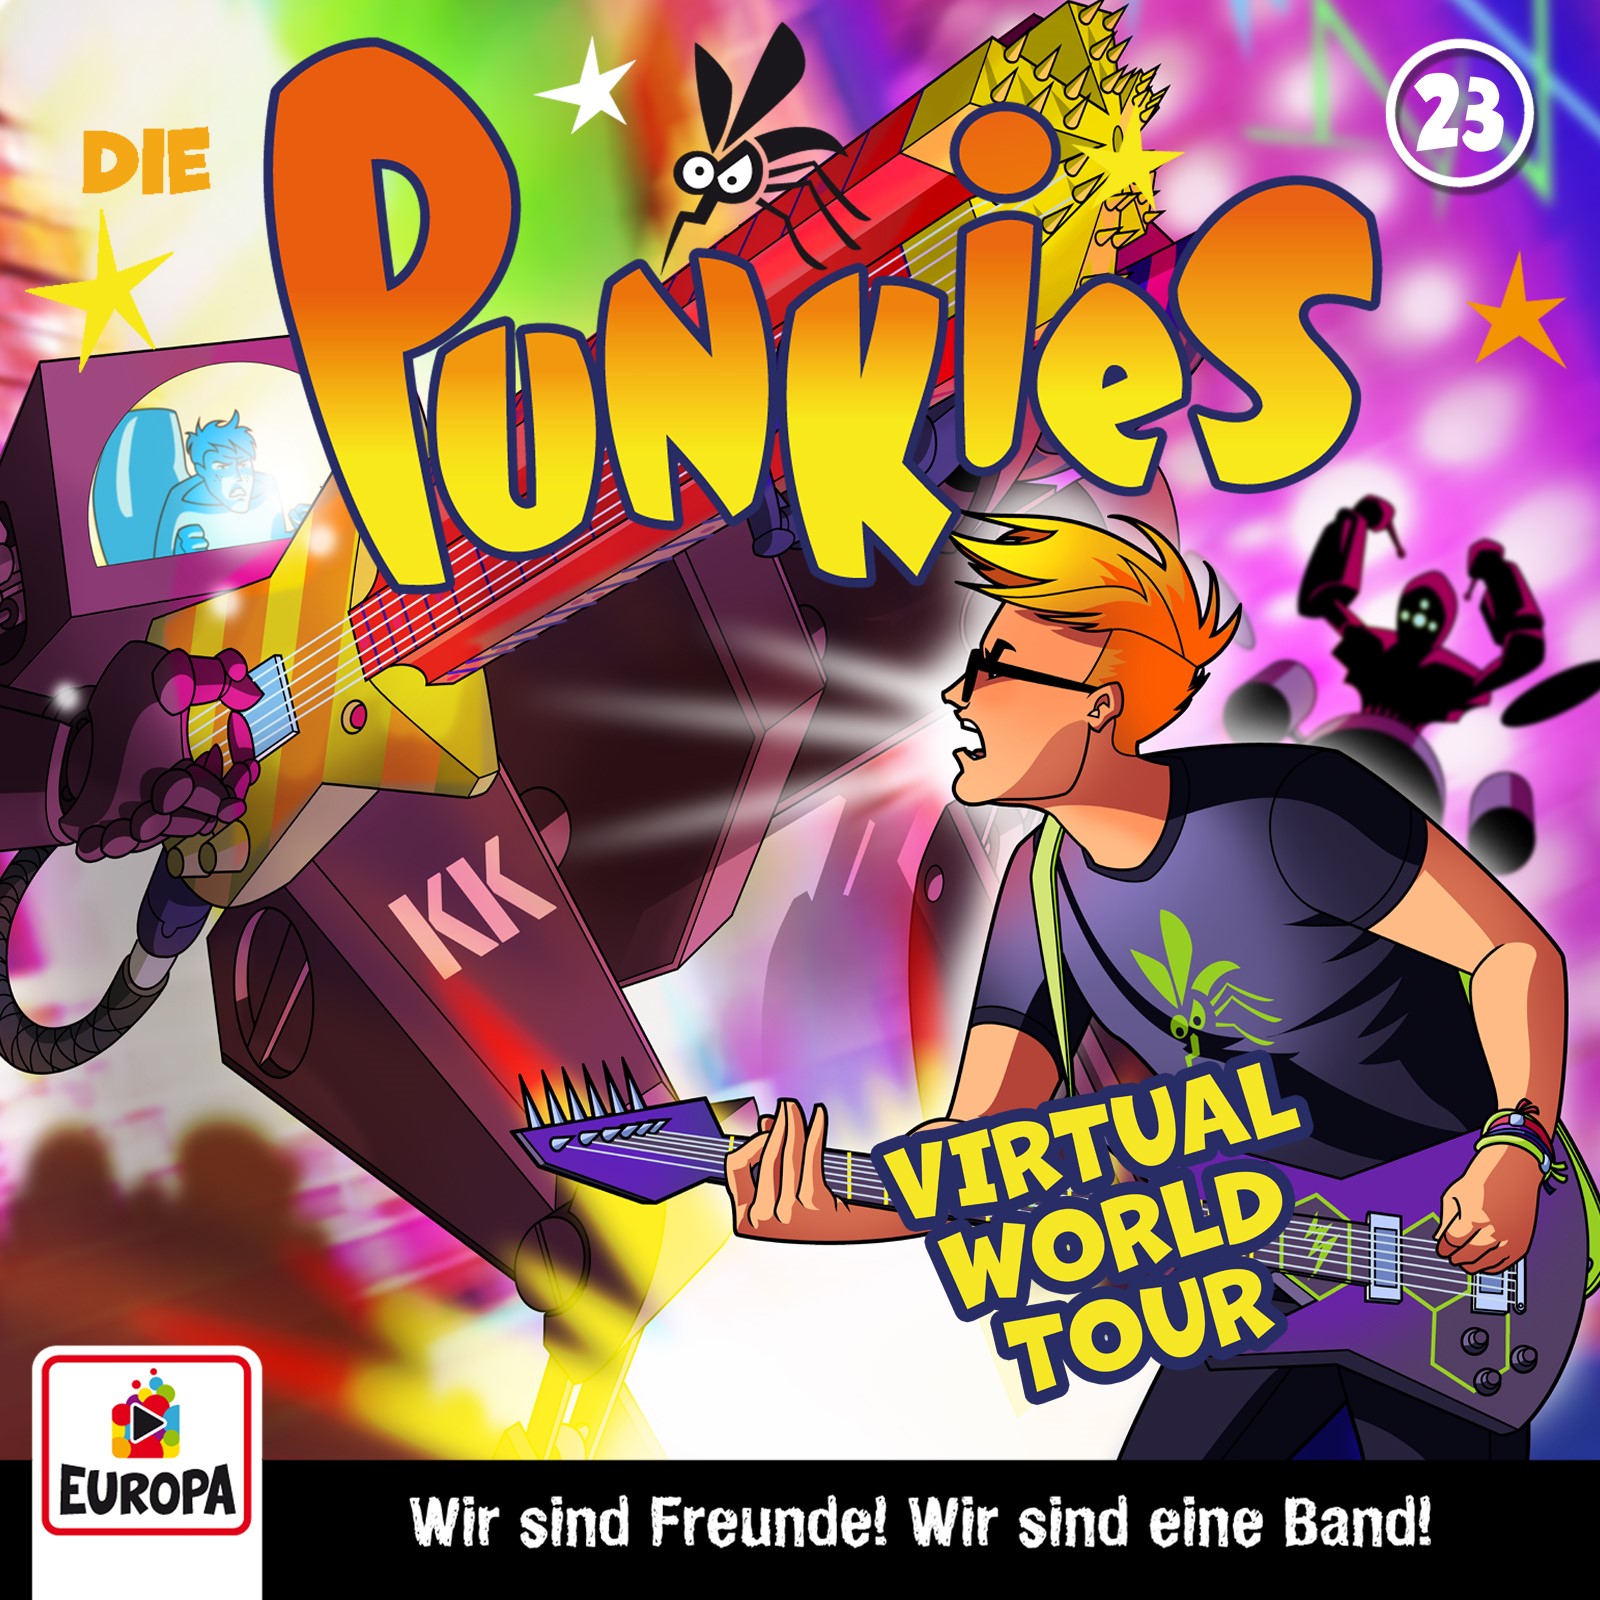 Die Punkies : Virtual World Tour!